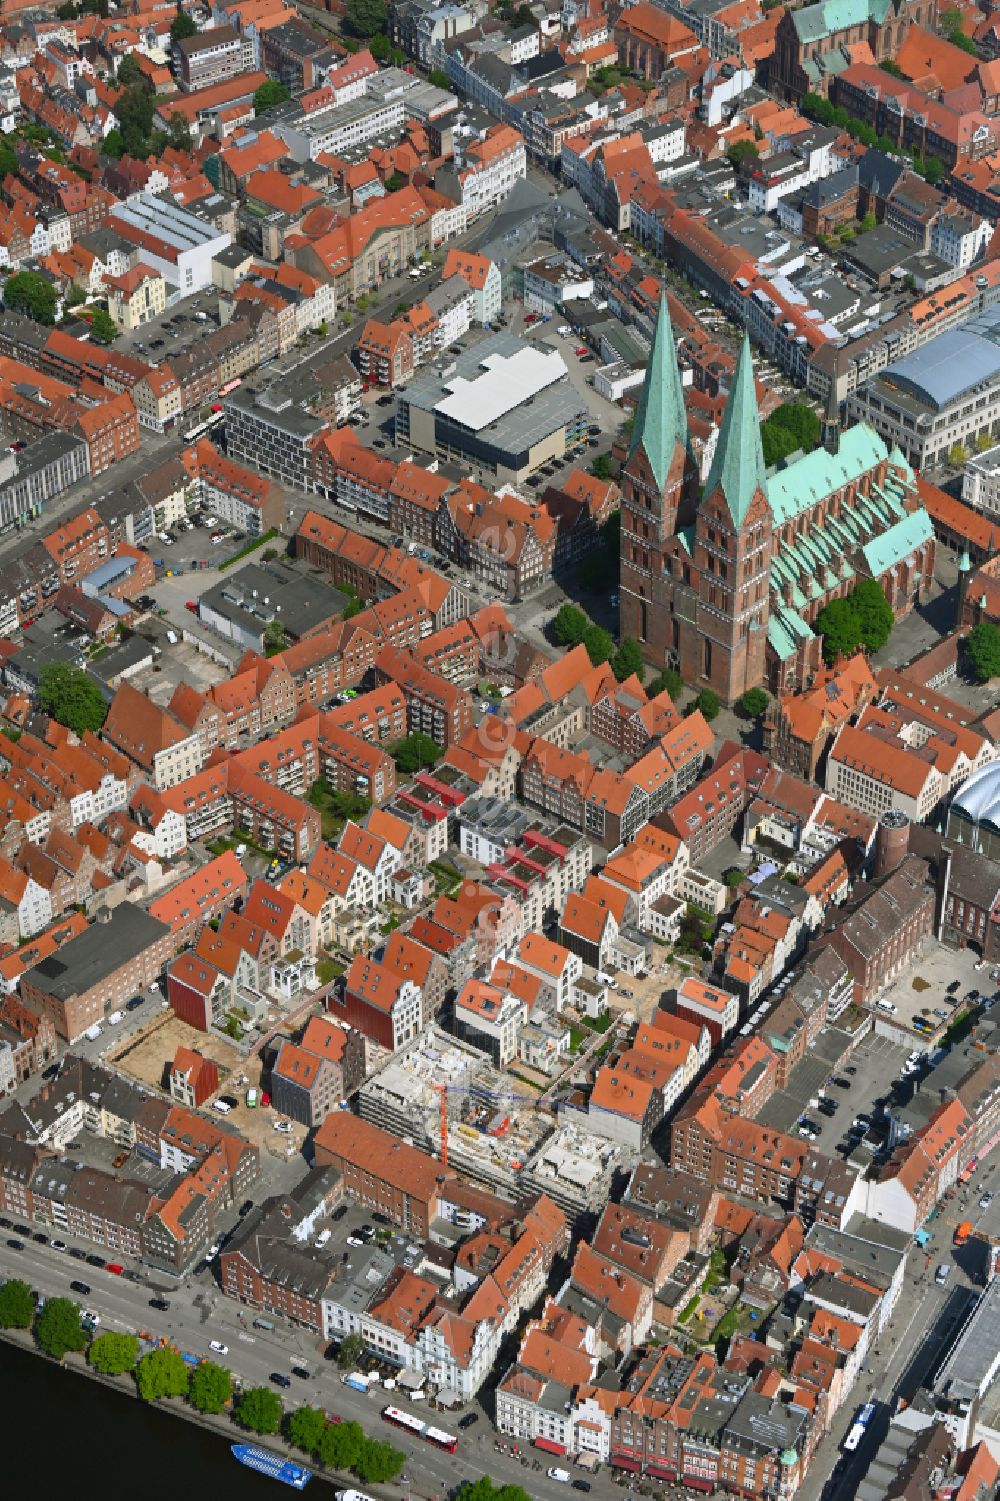 Luftbild Lübeck - Kathedrale St. Marien zu Lübeck in Lübeck im Bundesland Schleswig-Holstein, Deutschland